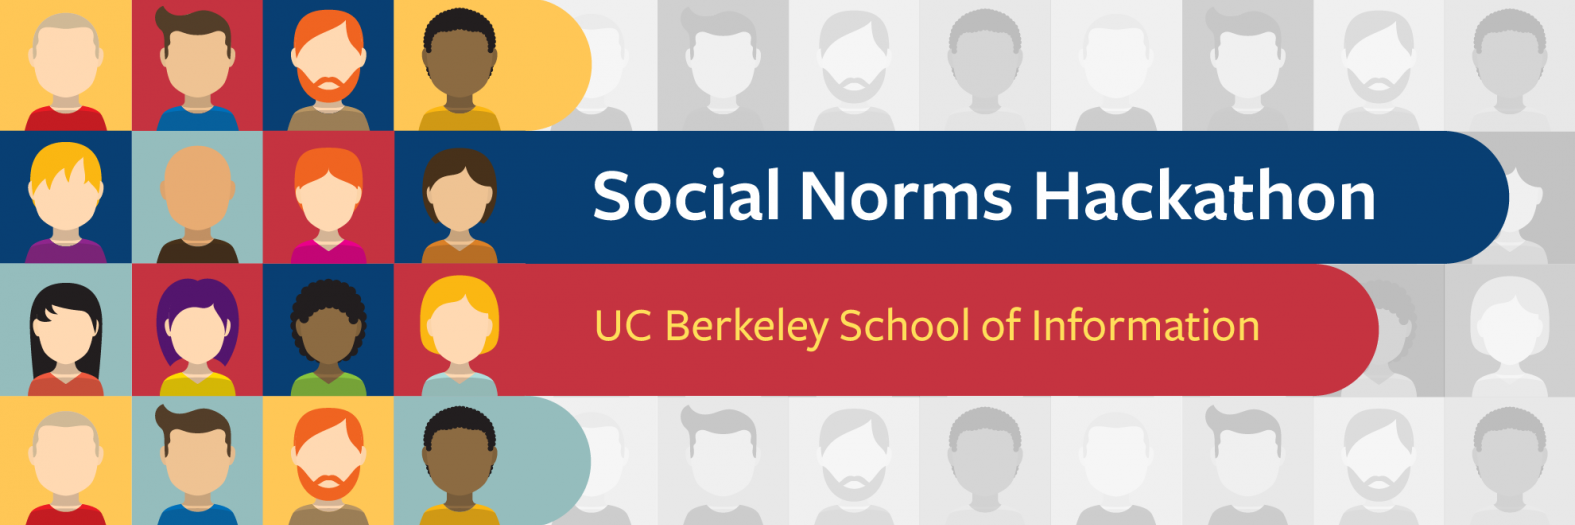 Social Norms Hackathon | UC Berkeley School of Information